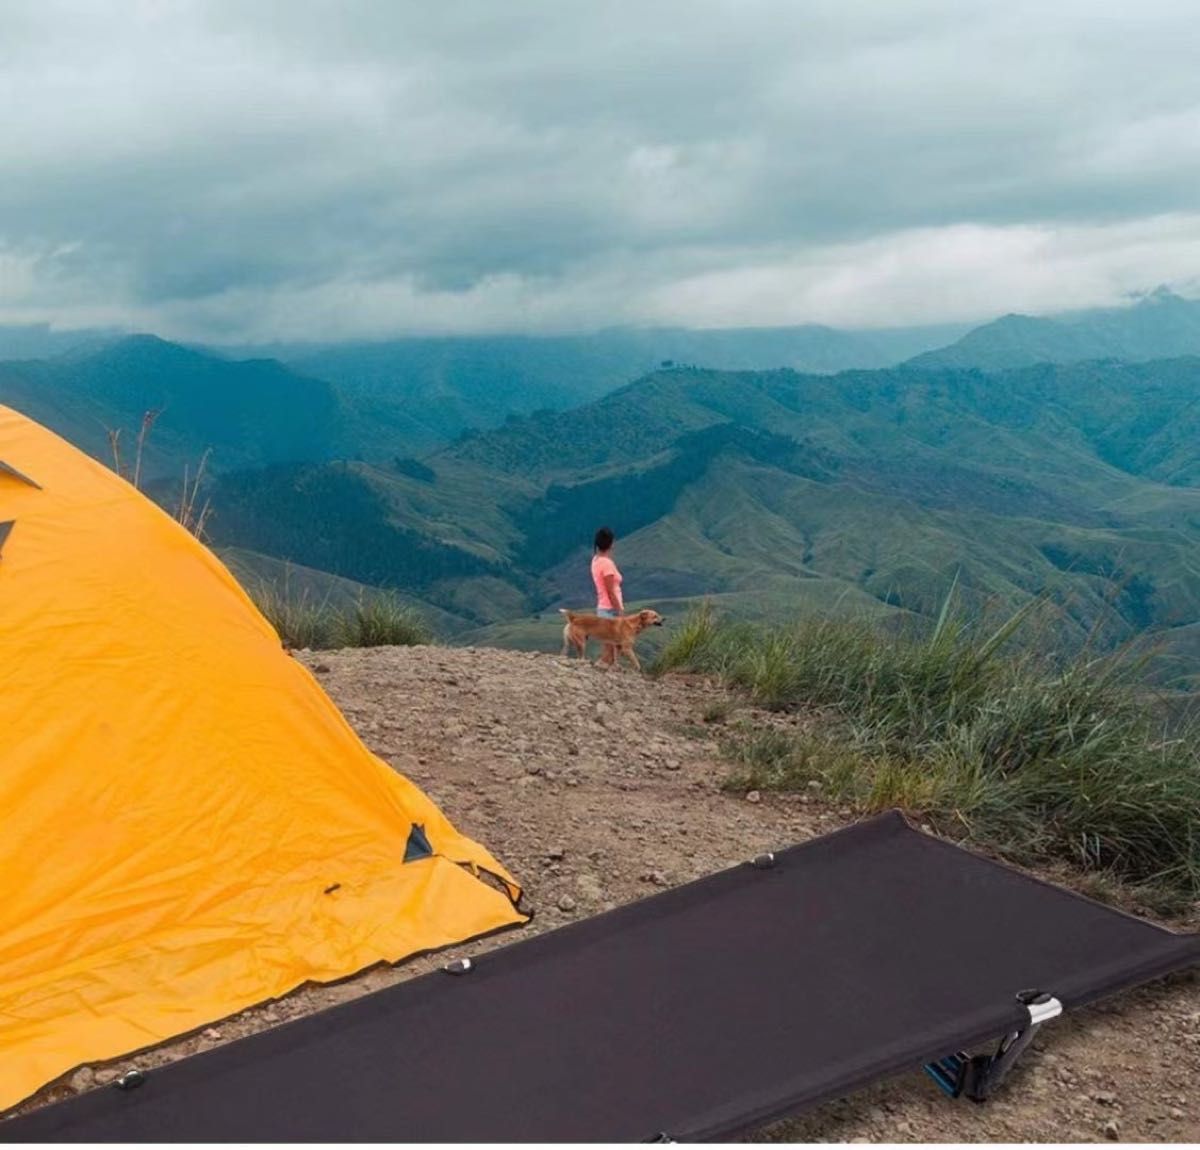 最安価格 US キャンプ コット ベッド キャンプ用品 アウトドア アウトドア 折りたたみ式 アンティーク 2WAY ヴィンテージ インダストリアル コット  2段階調整 キャンプコット アウトドアベッド